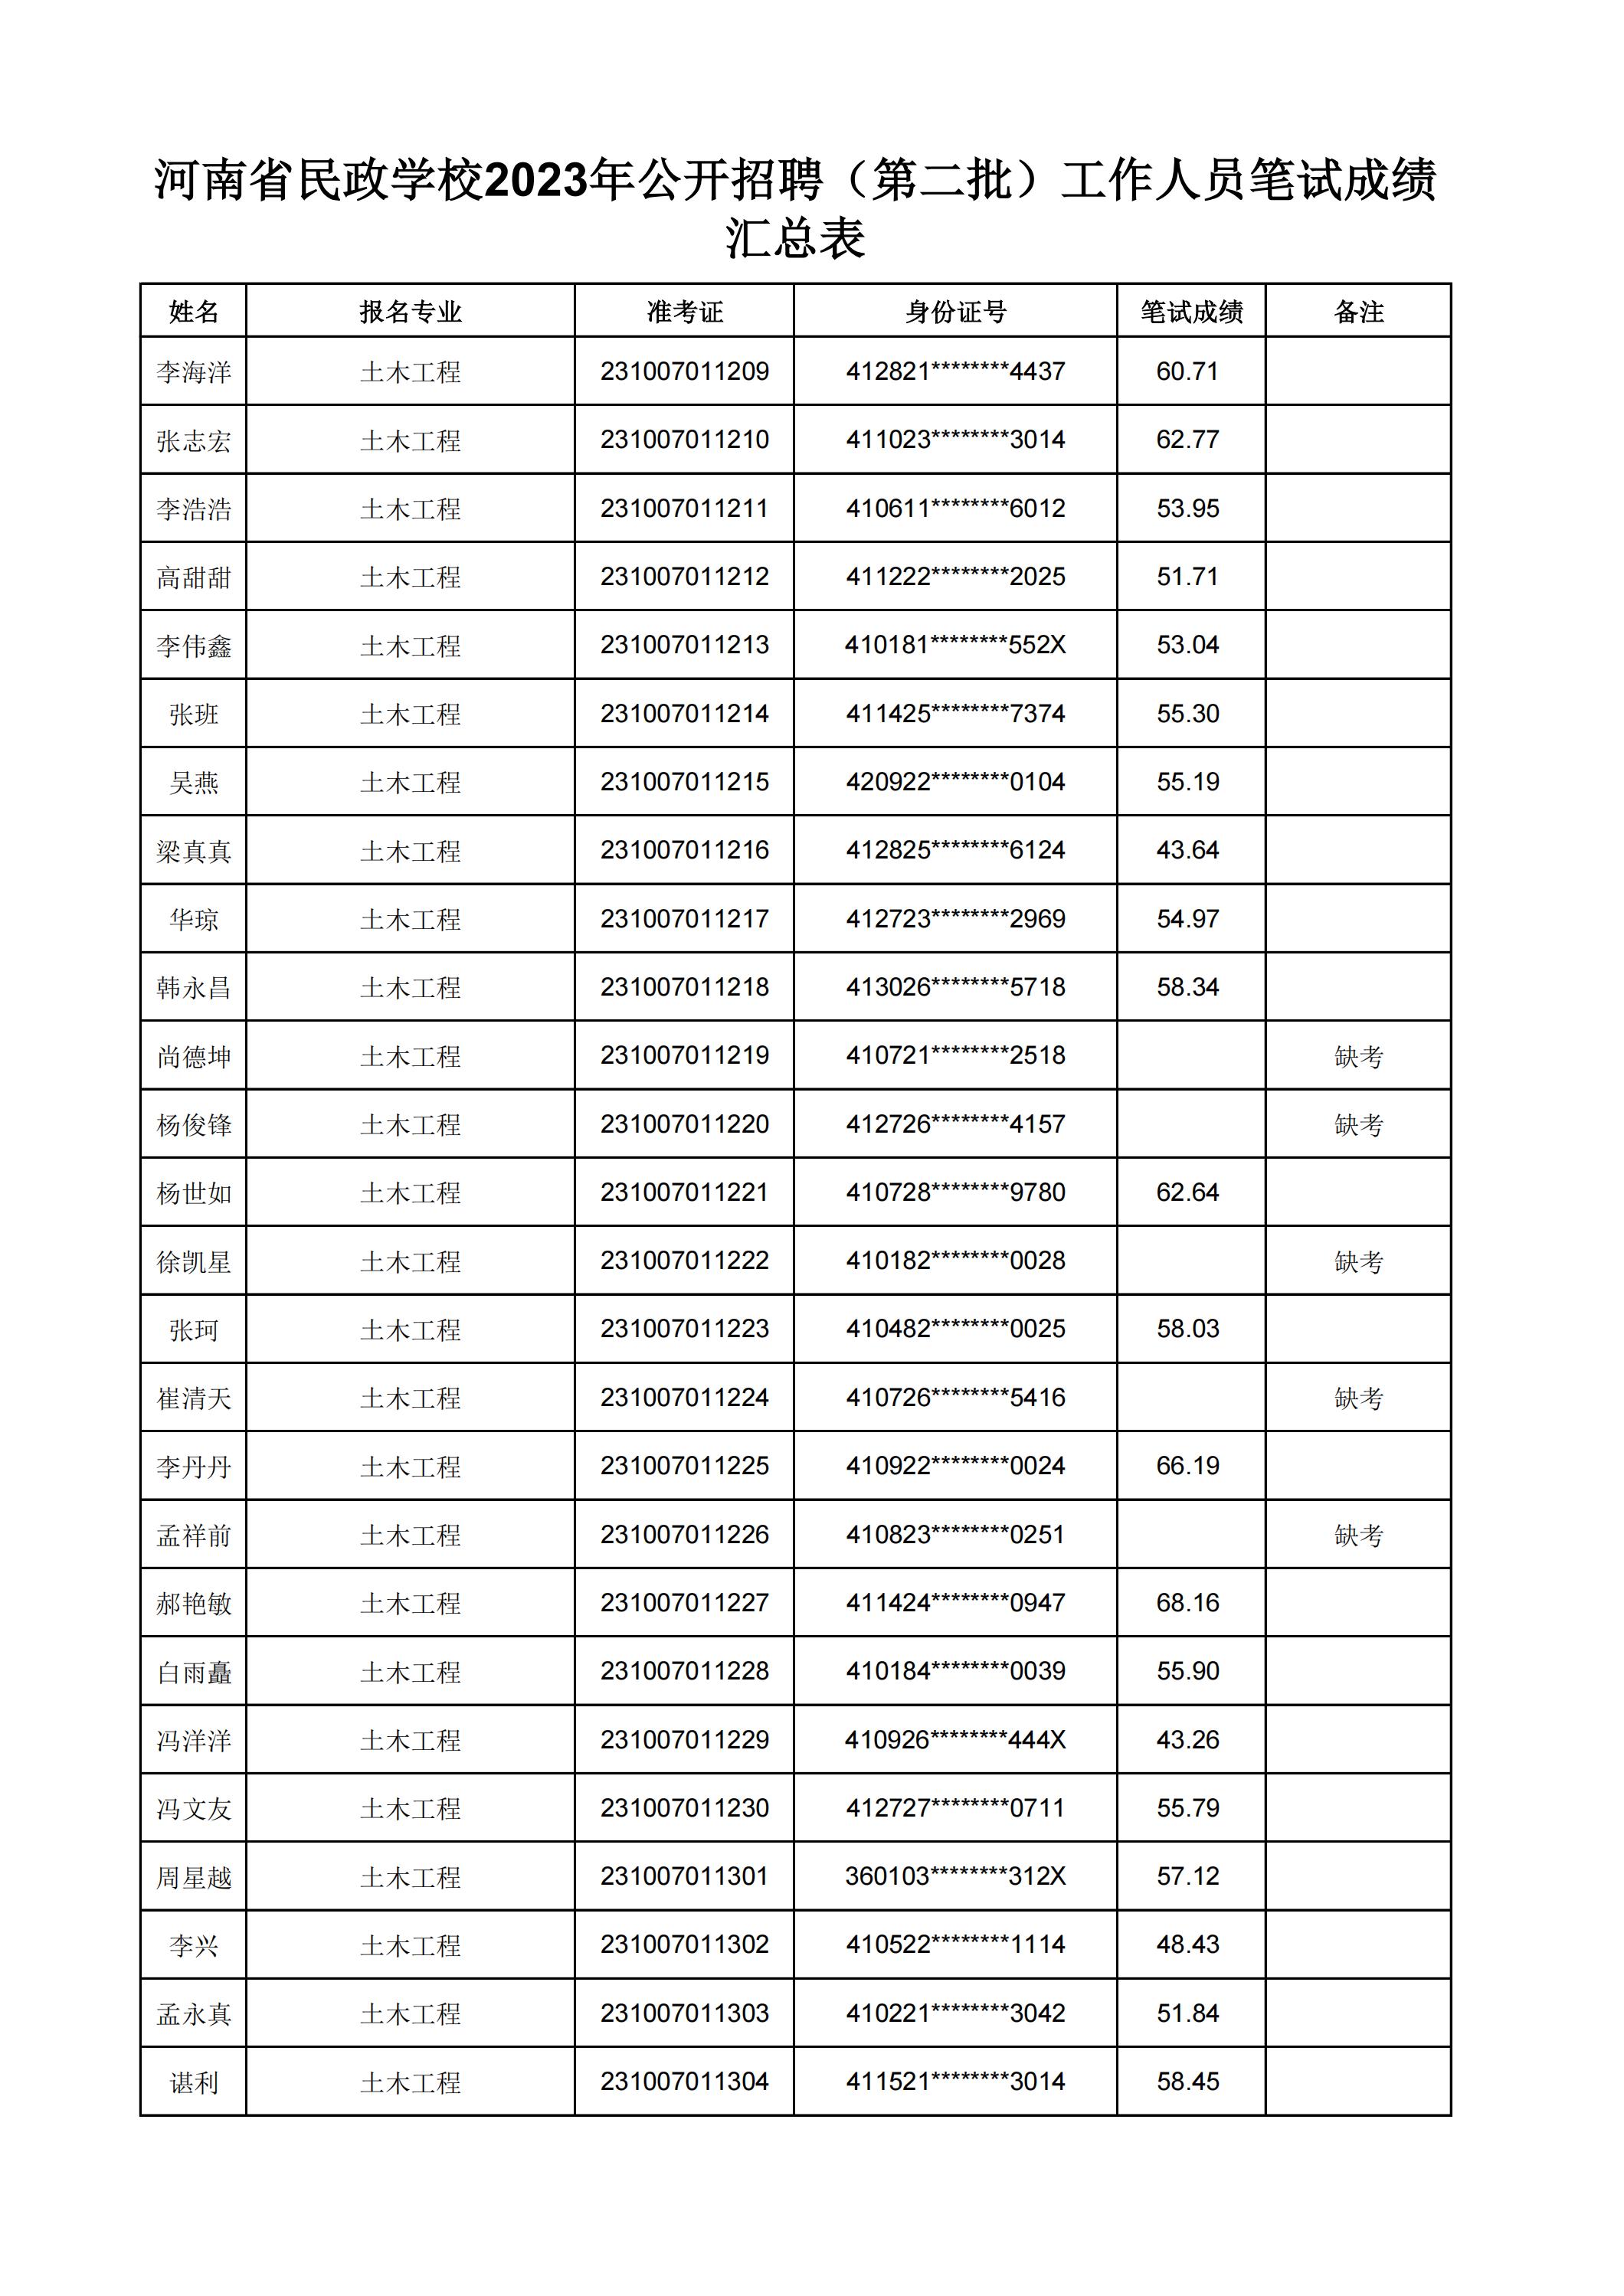 河南省民政学校2023年公开招聘（第二批）工作人员笔试成绩汇总表(2)_13.jpg